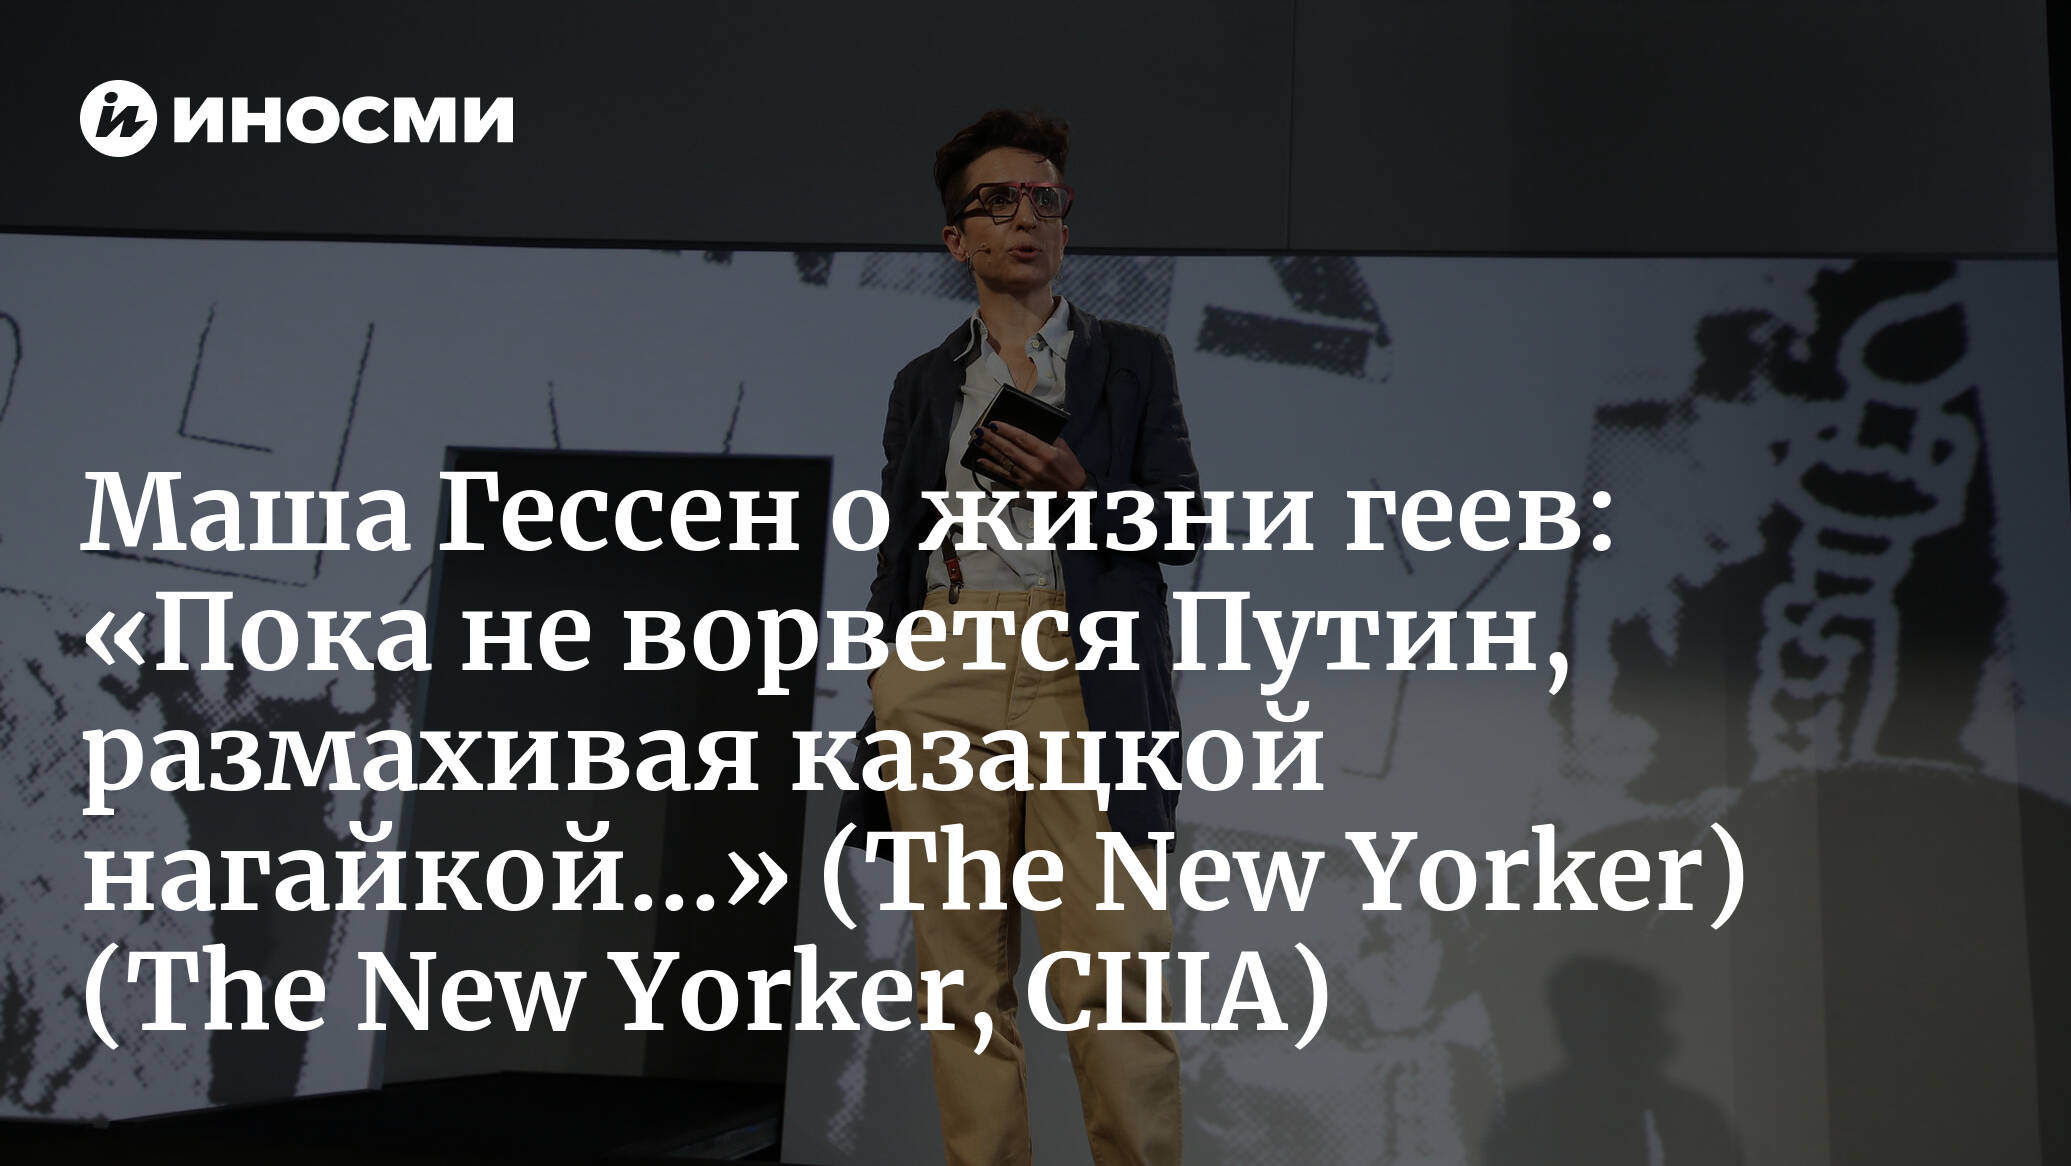 The New Yorker (США): как российские ЛГБТ-пары принимают решения - уехать  из страны или остаться (The New Yorker, США) | 07.10.2022, ИноСМИ